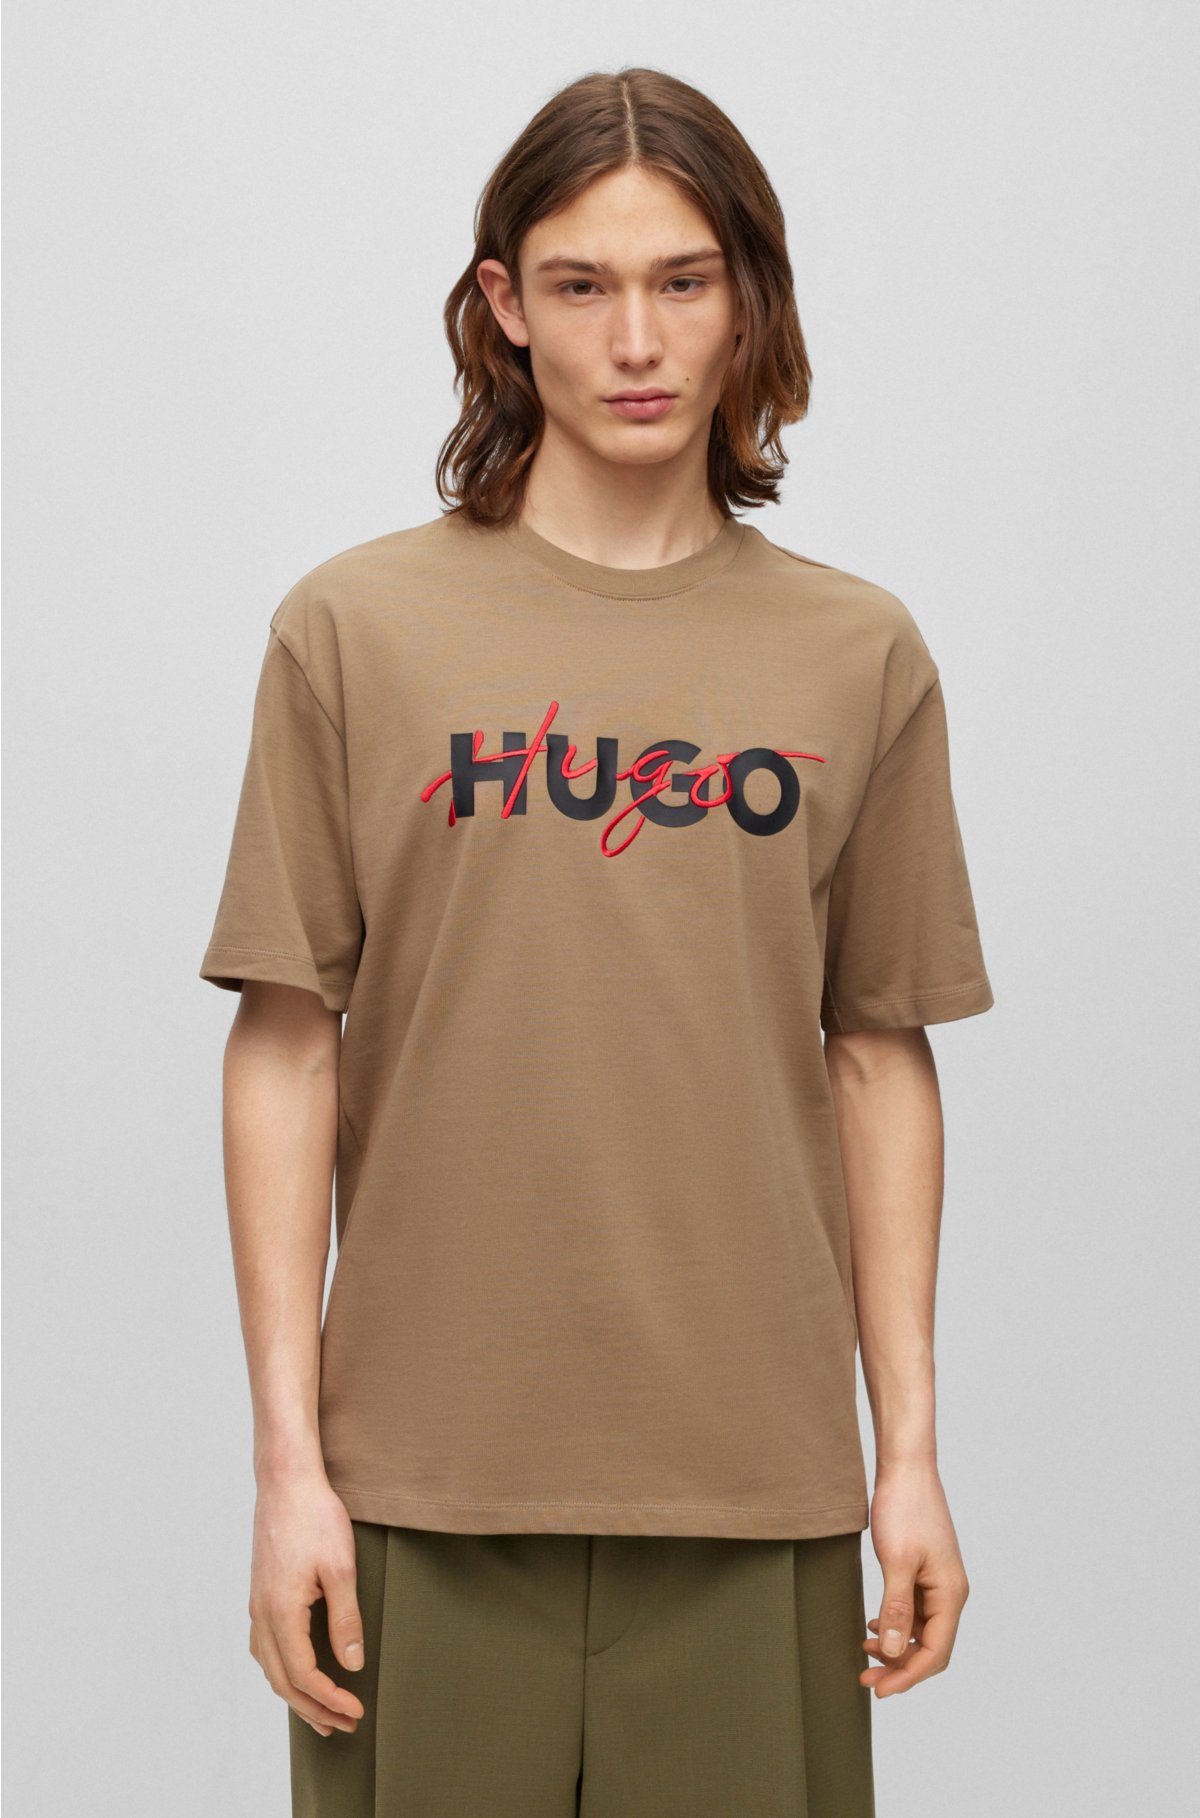 HUGO - コットンジャージー Tシャツ ダブルロゴプリント